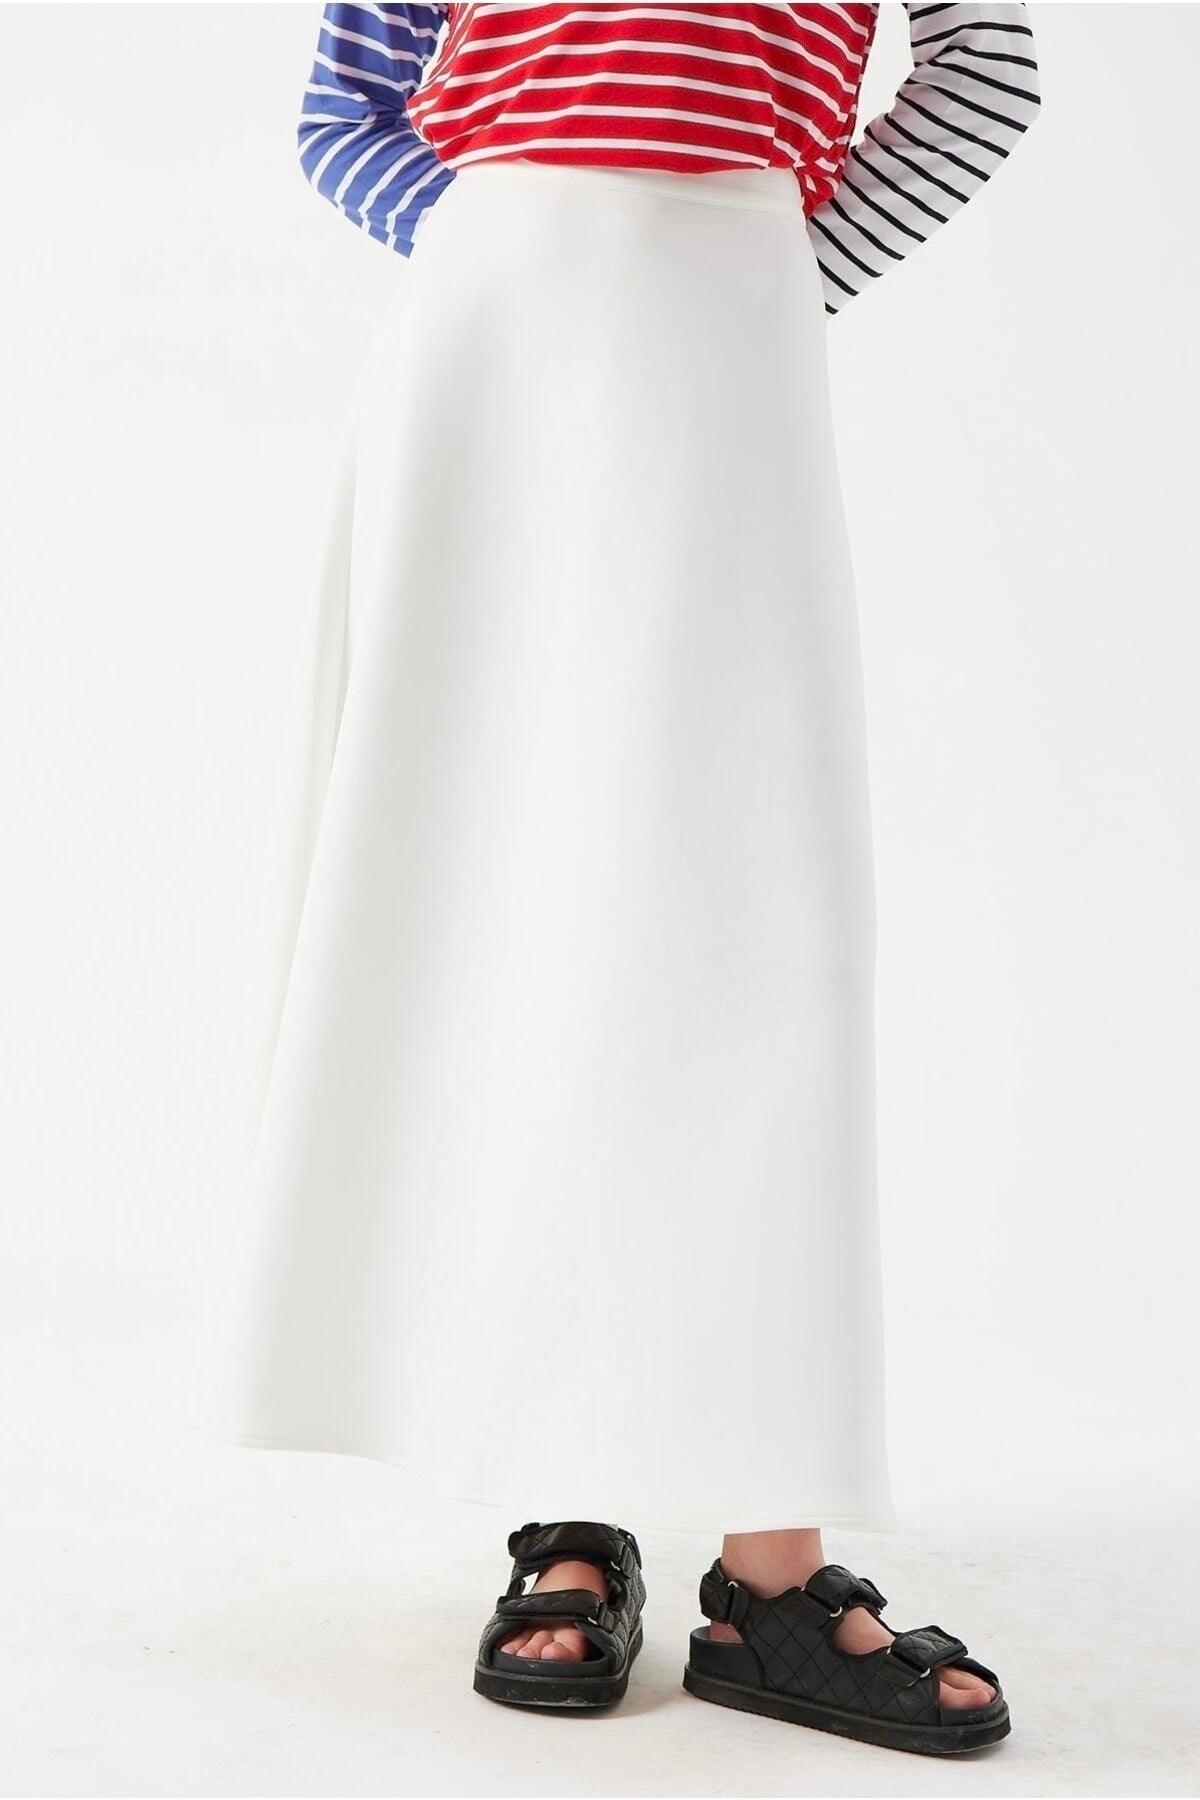 White Scuba Skirt - Swordslife